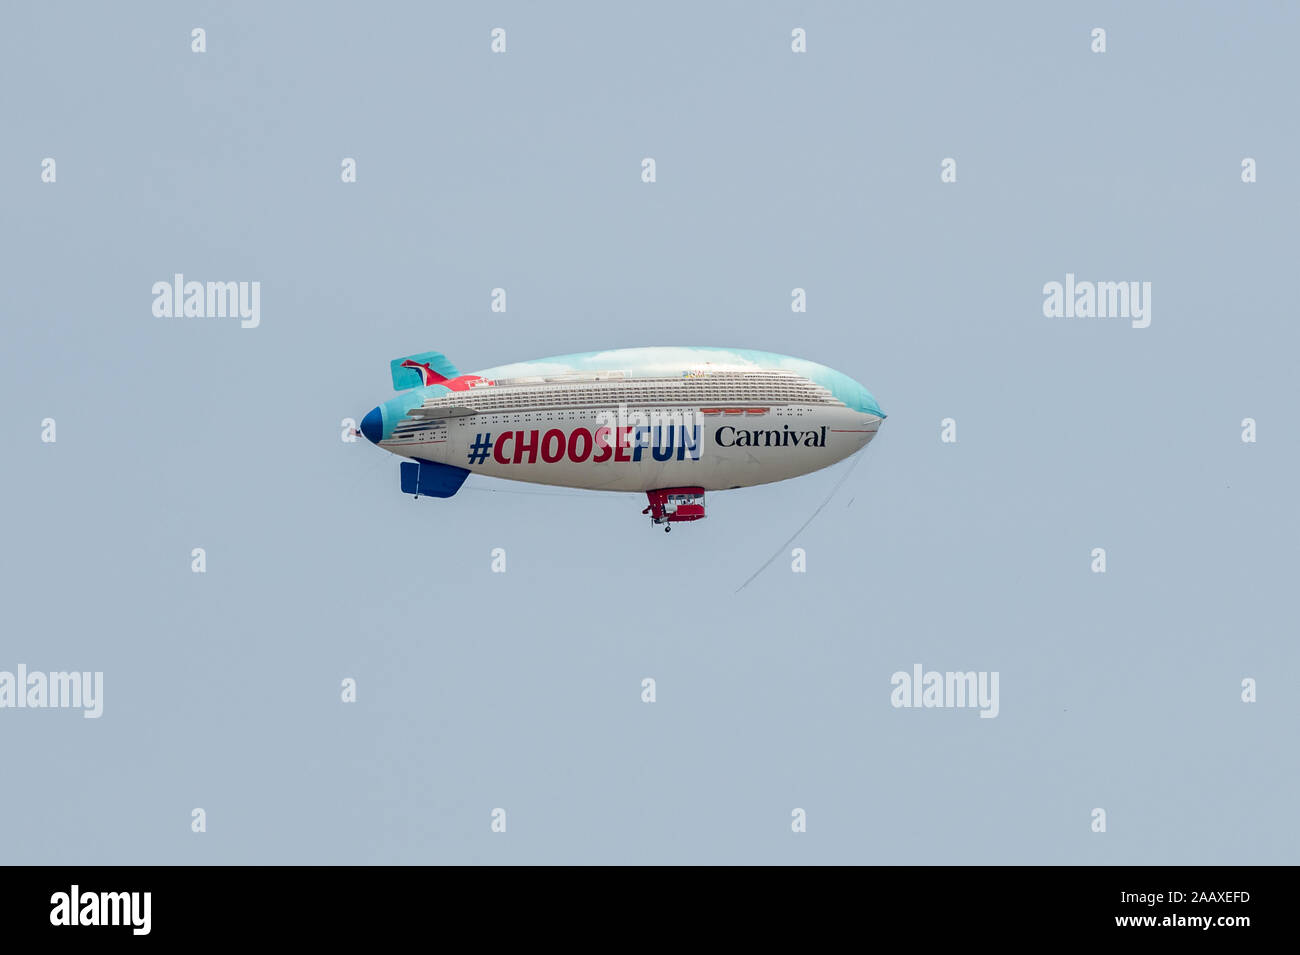 Luftschiff. Ein Luftschiff über Philadelphia, wie ein Kreuzfahrtschiff gestaltet, Werbung der Carnival Cruise Line. Stockfoto